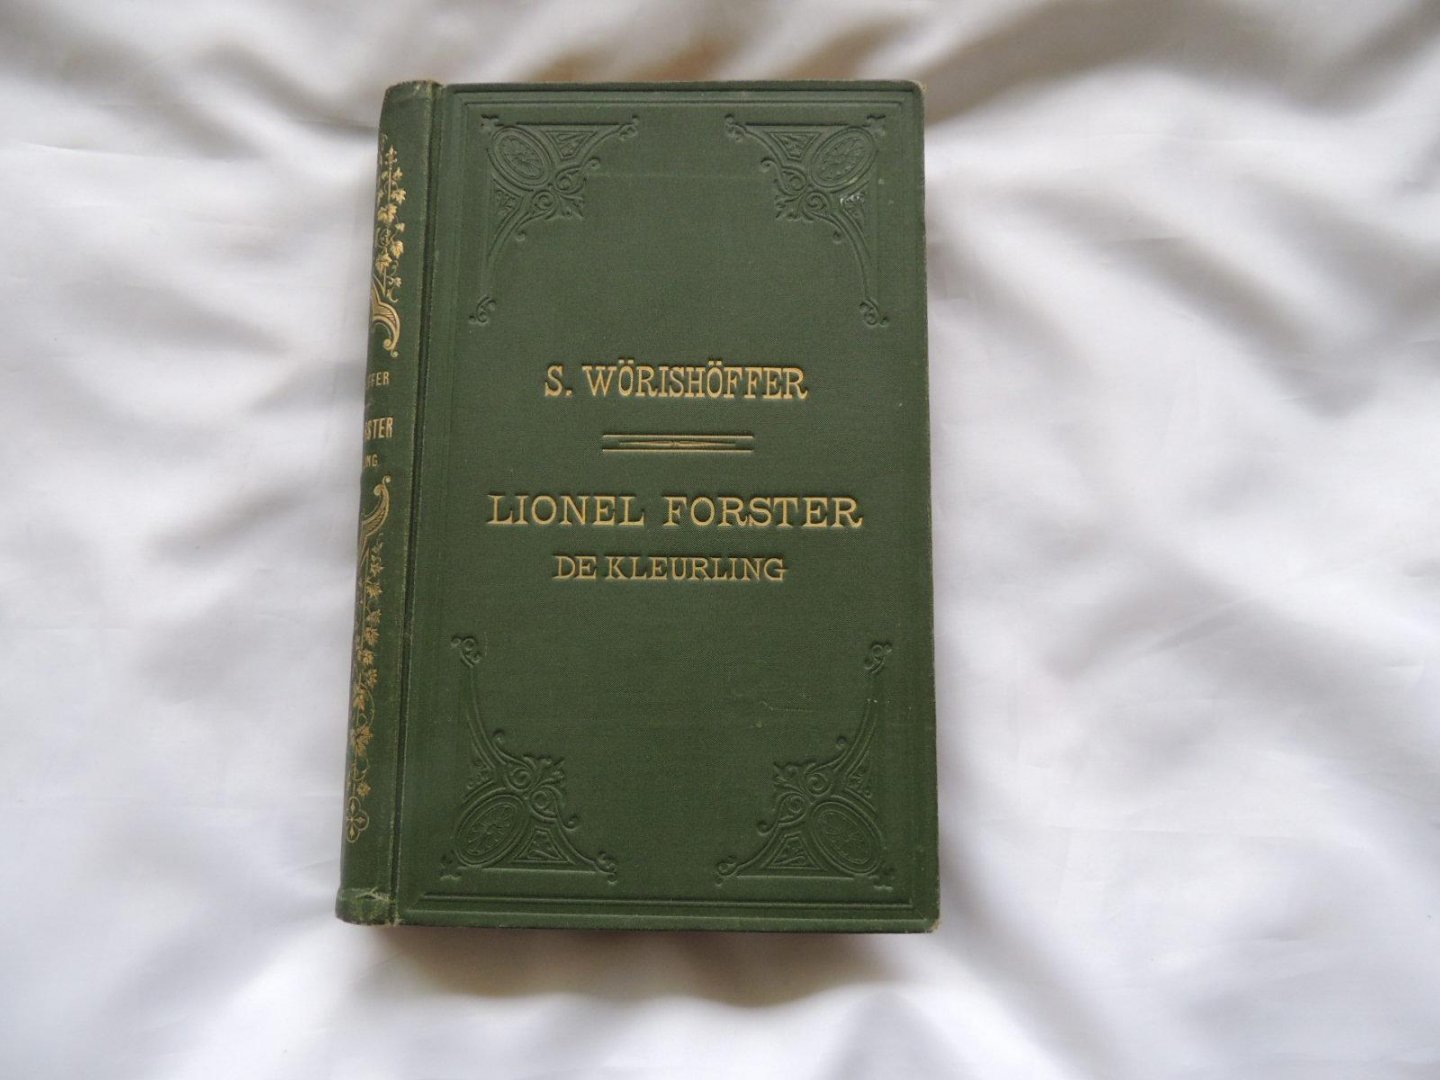 Wörishöffer, S. Sophie Wörishöffer; Joh S Gehrts - Lionel Forster, de kleurling : eene geschiedenis uit den Amerikaanschen burgeroorlog - Met 16 kopergravures van Joh. Gehrts.